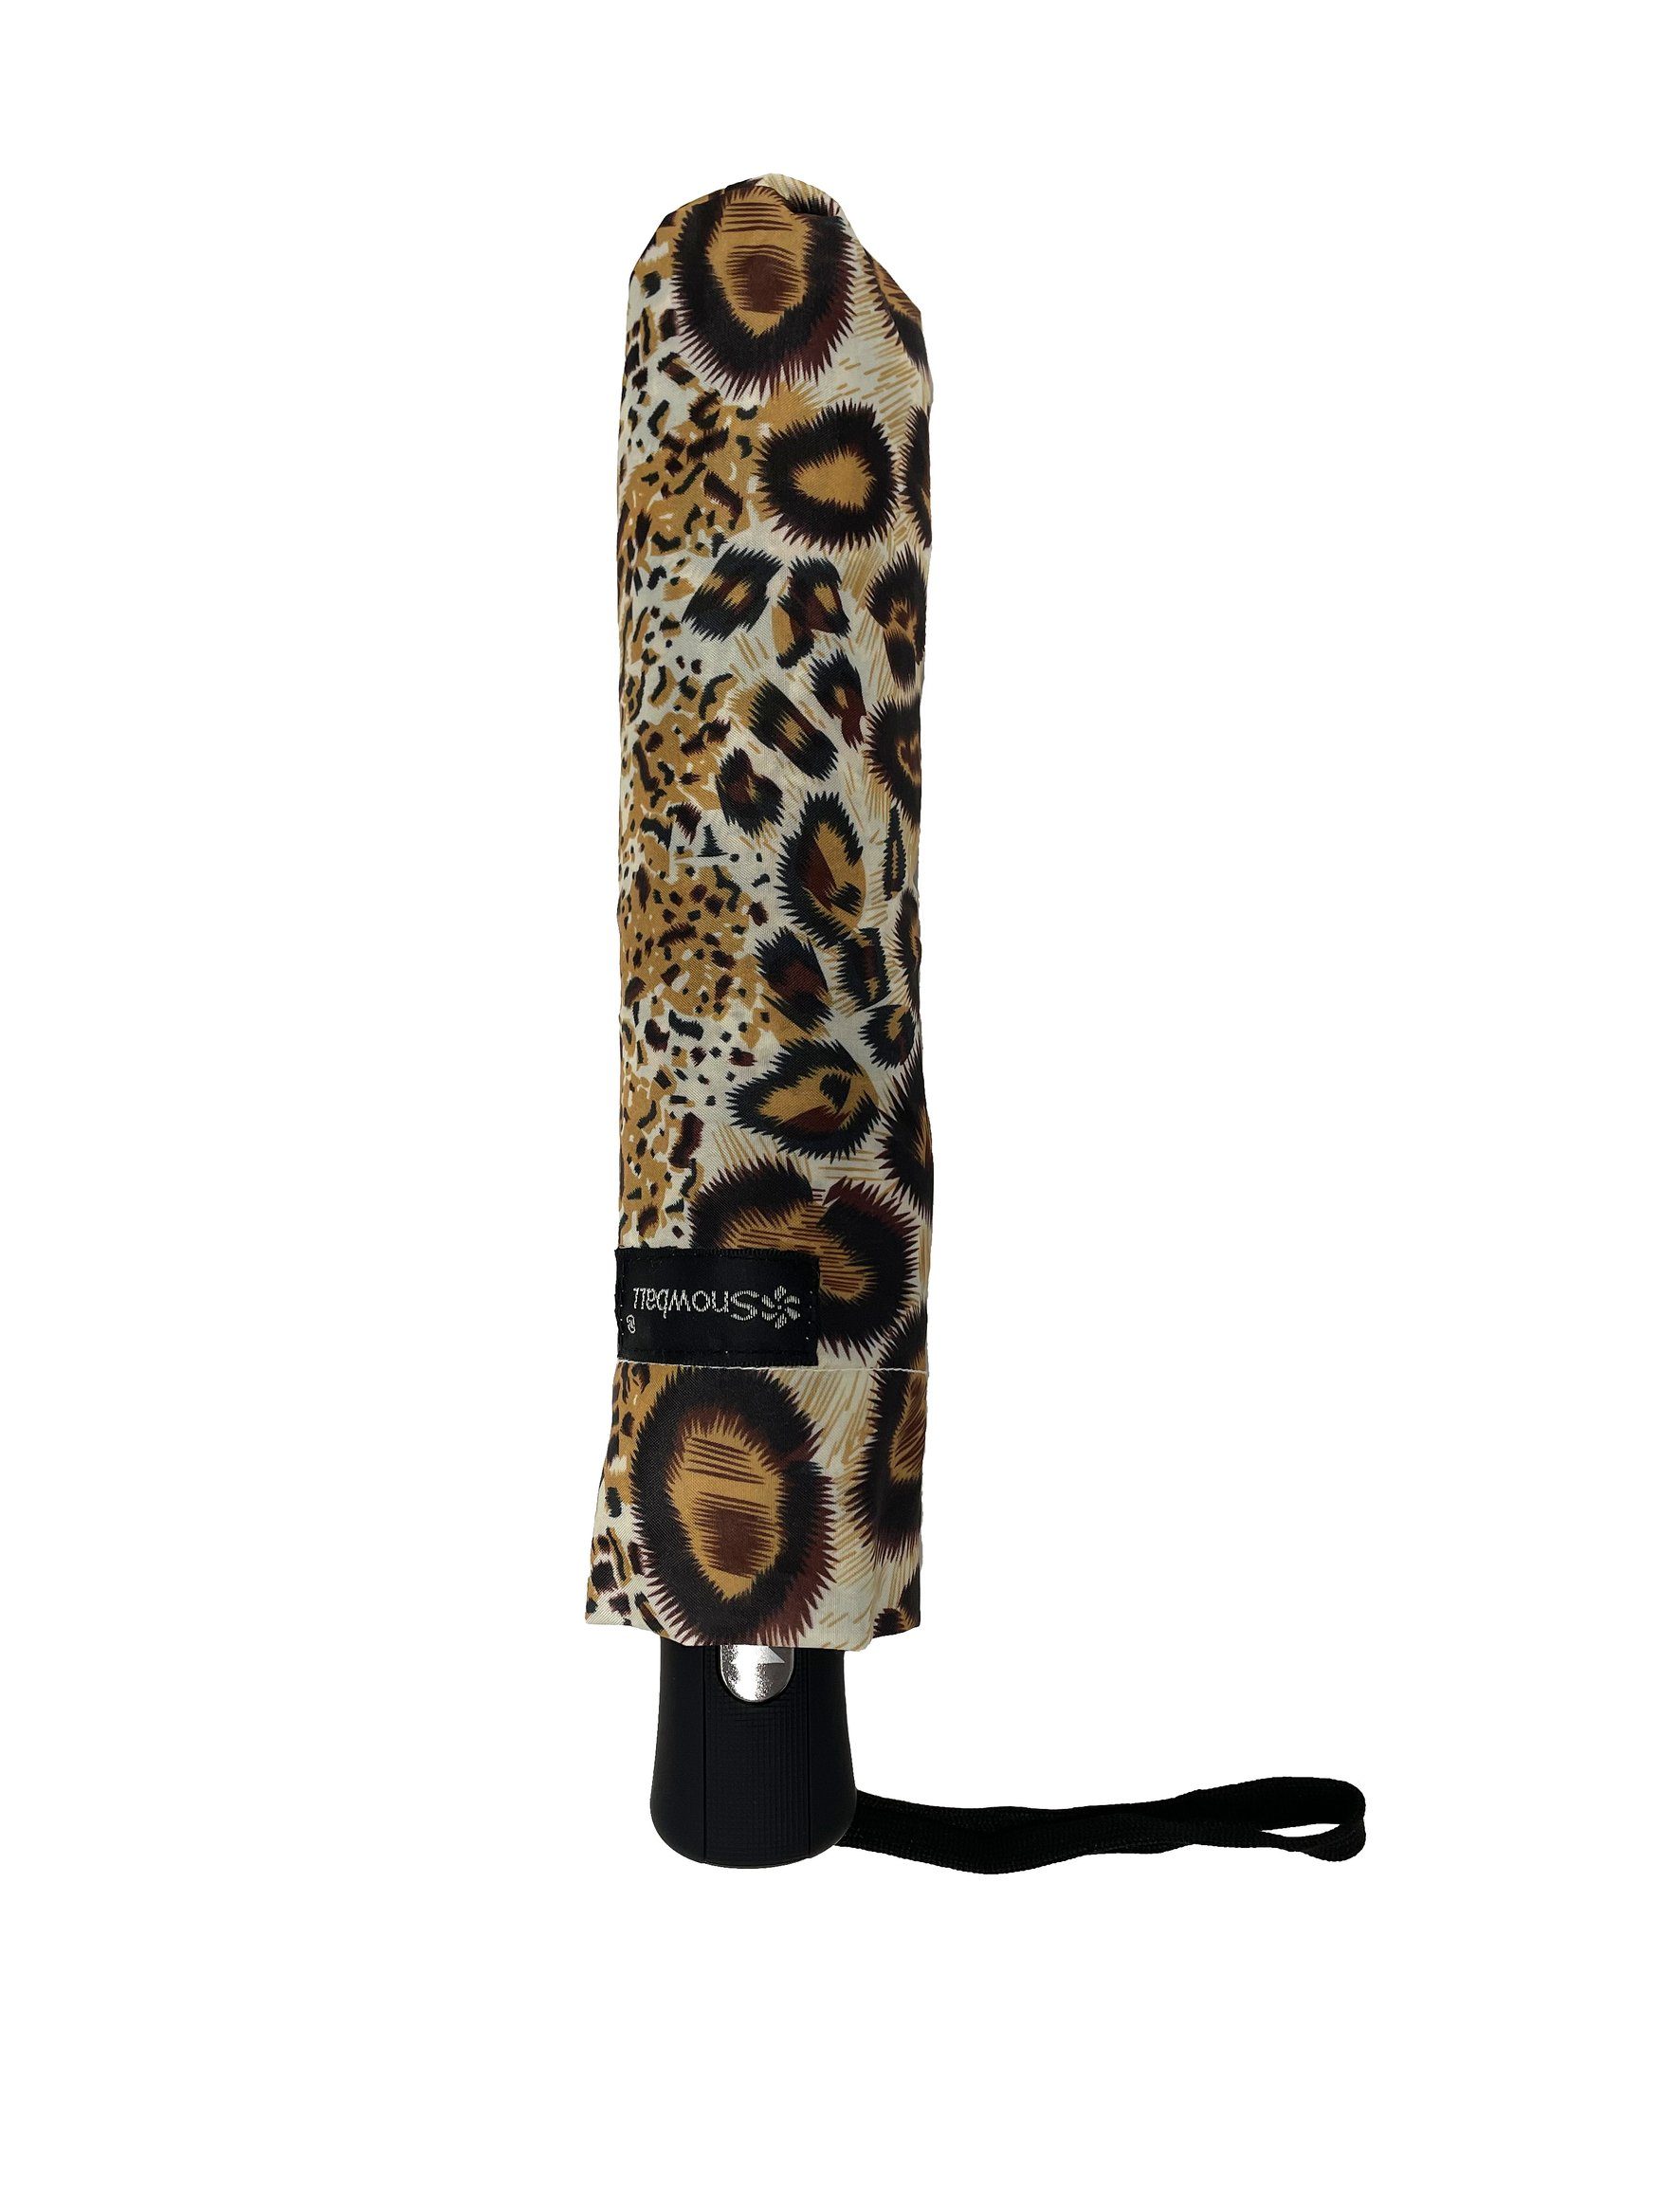 Taschenregenschirm Muster Taschenschirm, in Braun Leopard ANELY 6747 Kleiner Regenschirm Automatik